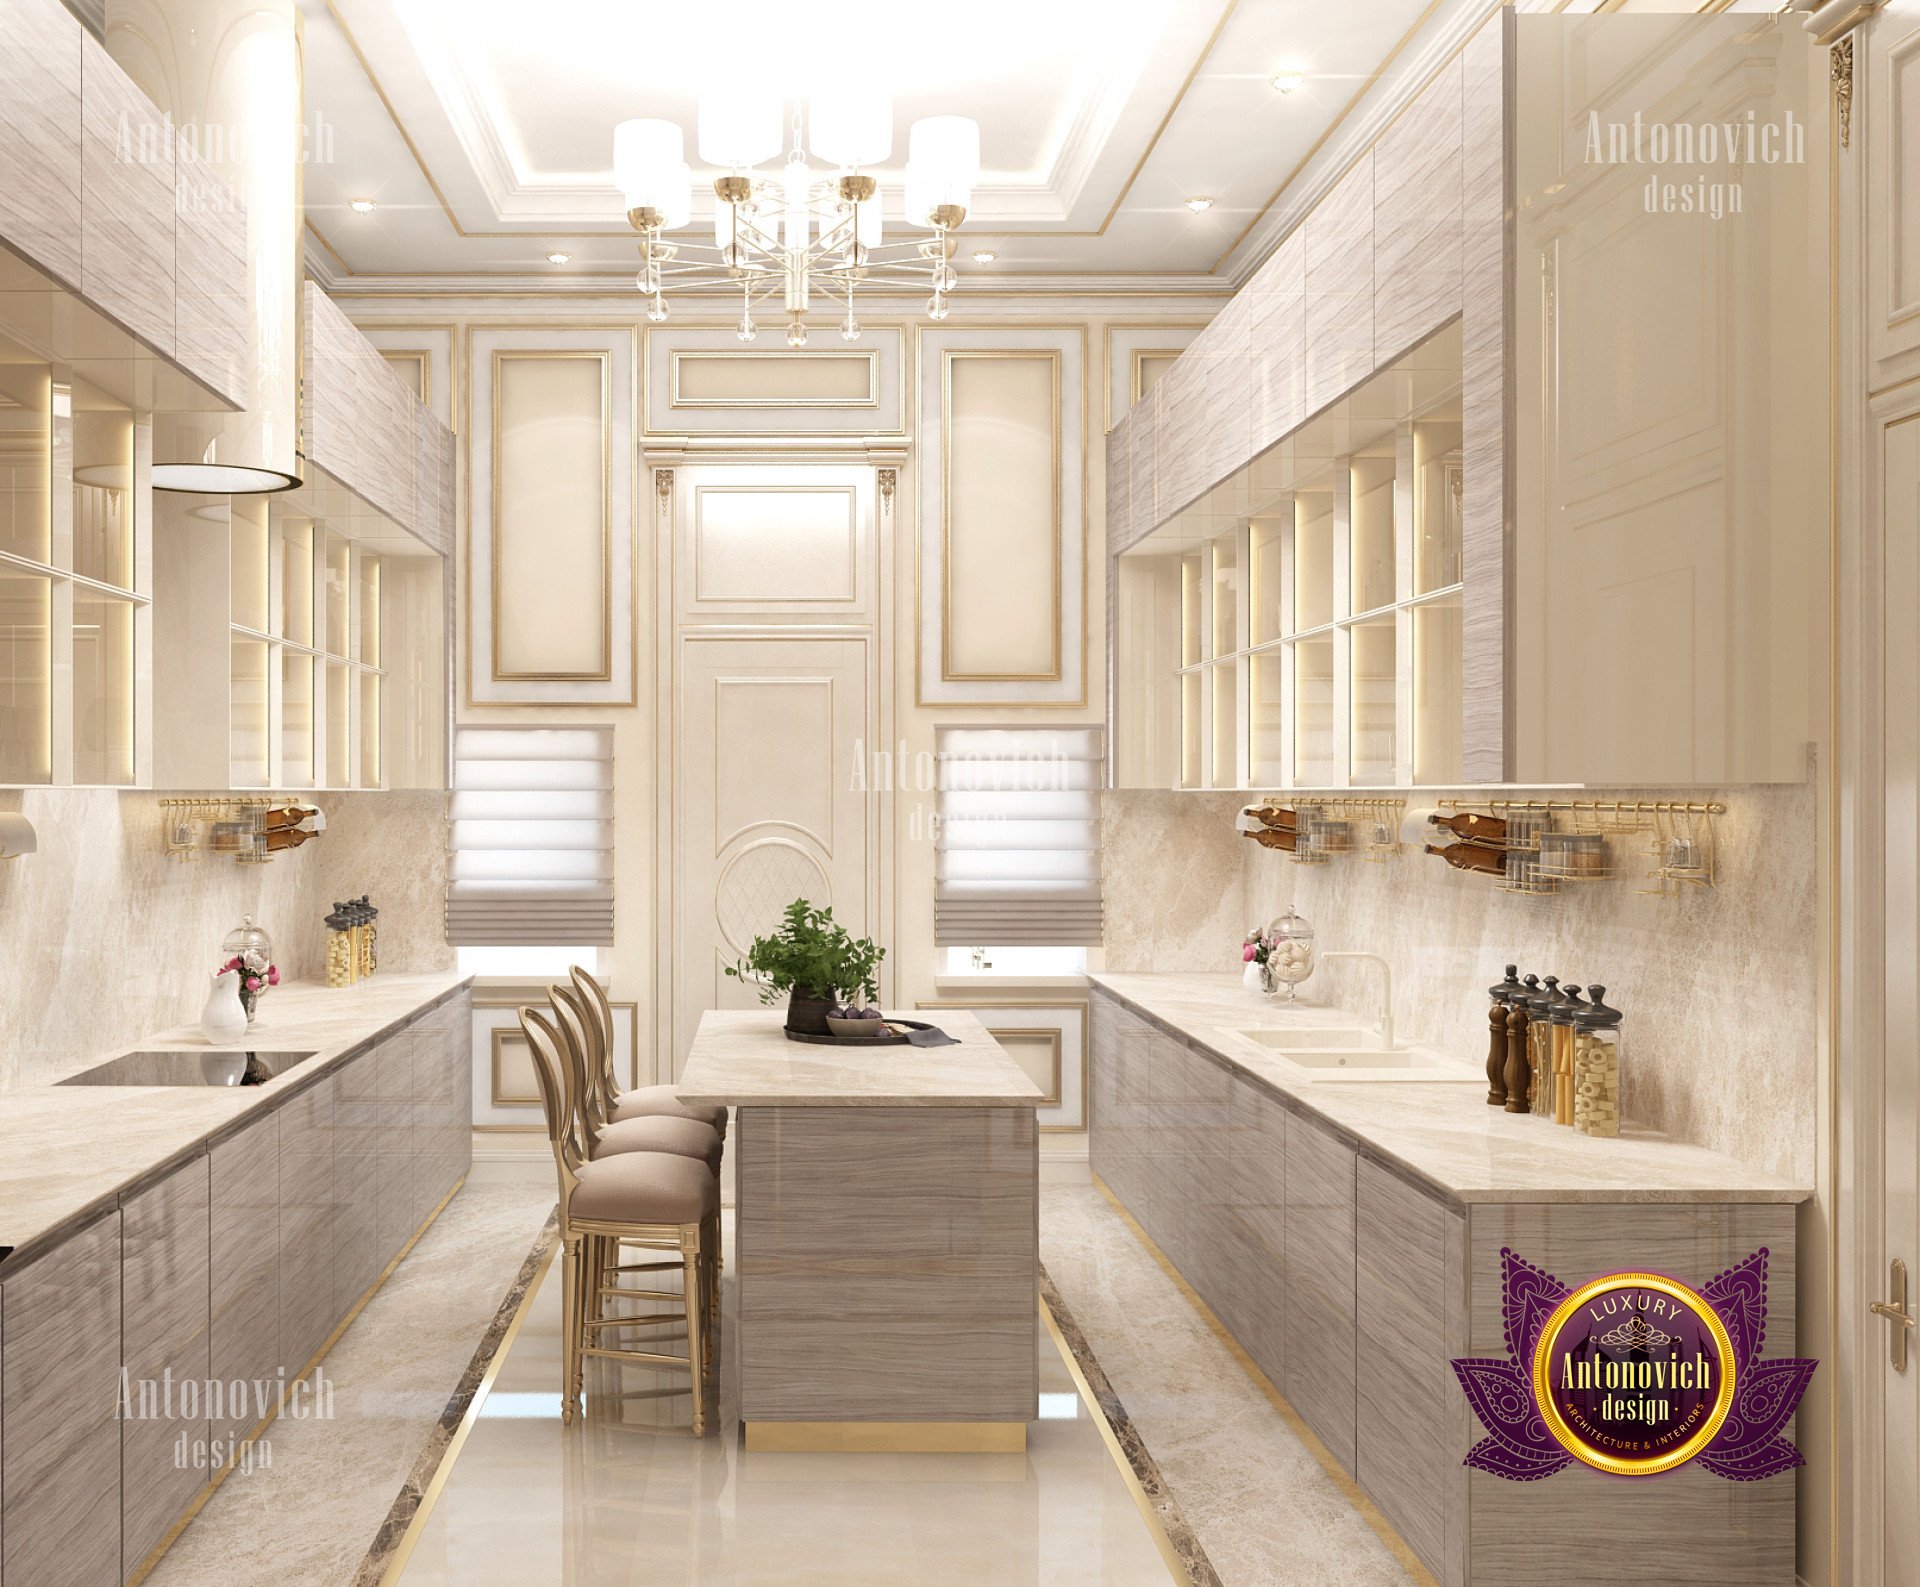 Kitchen modern interior design - luxury interior design company in